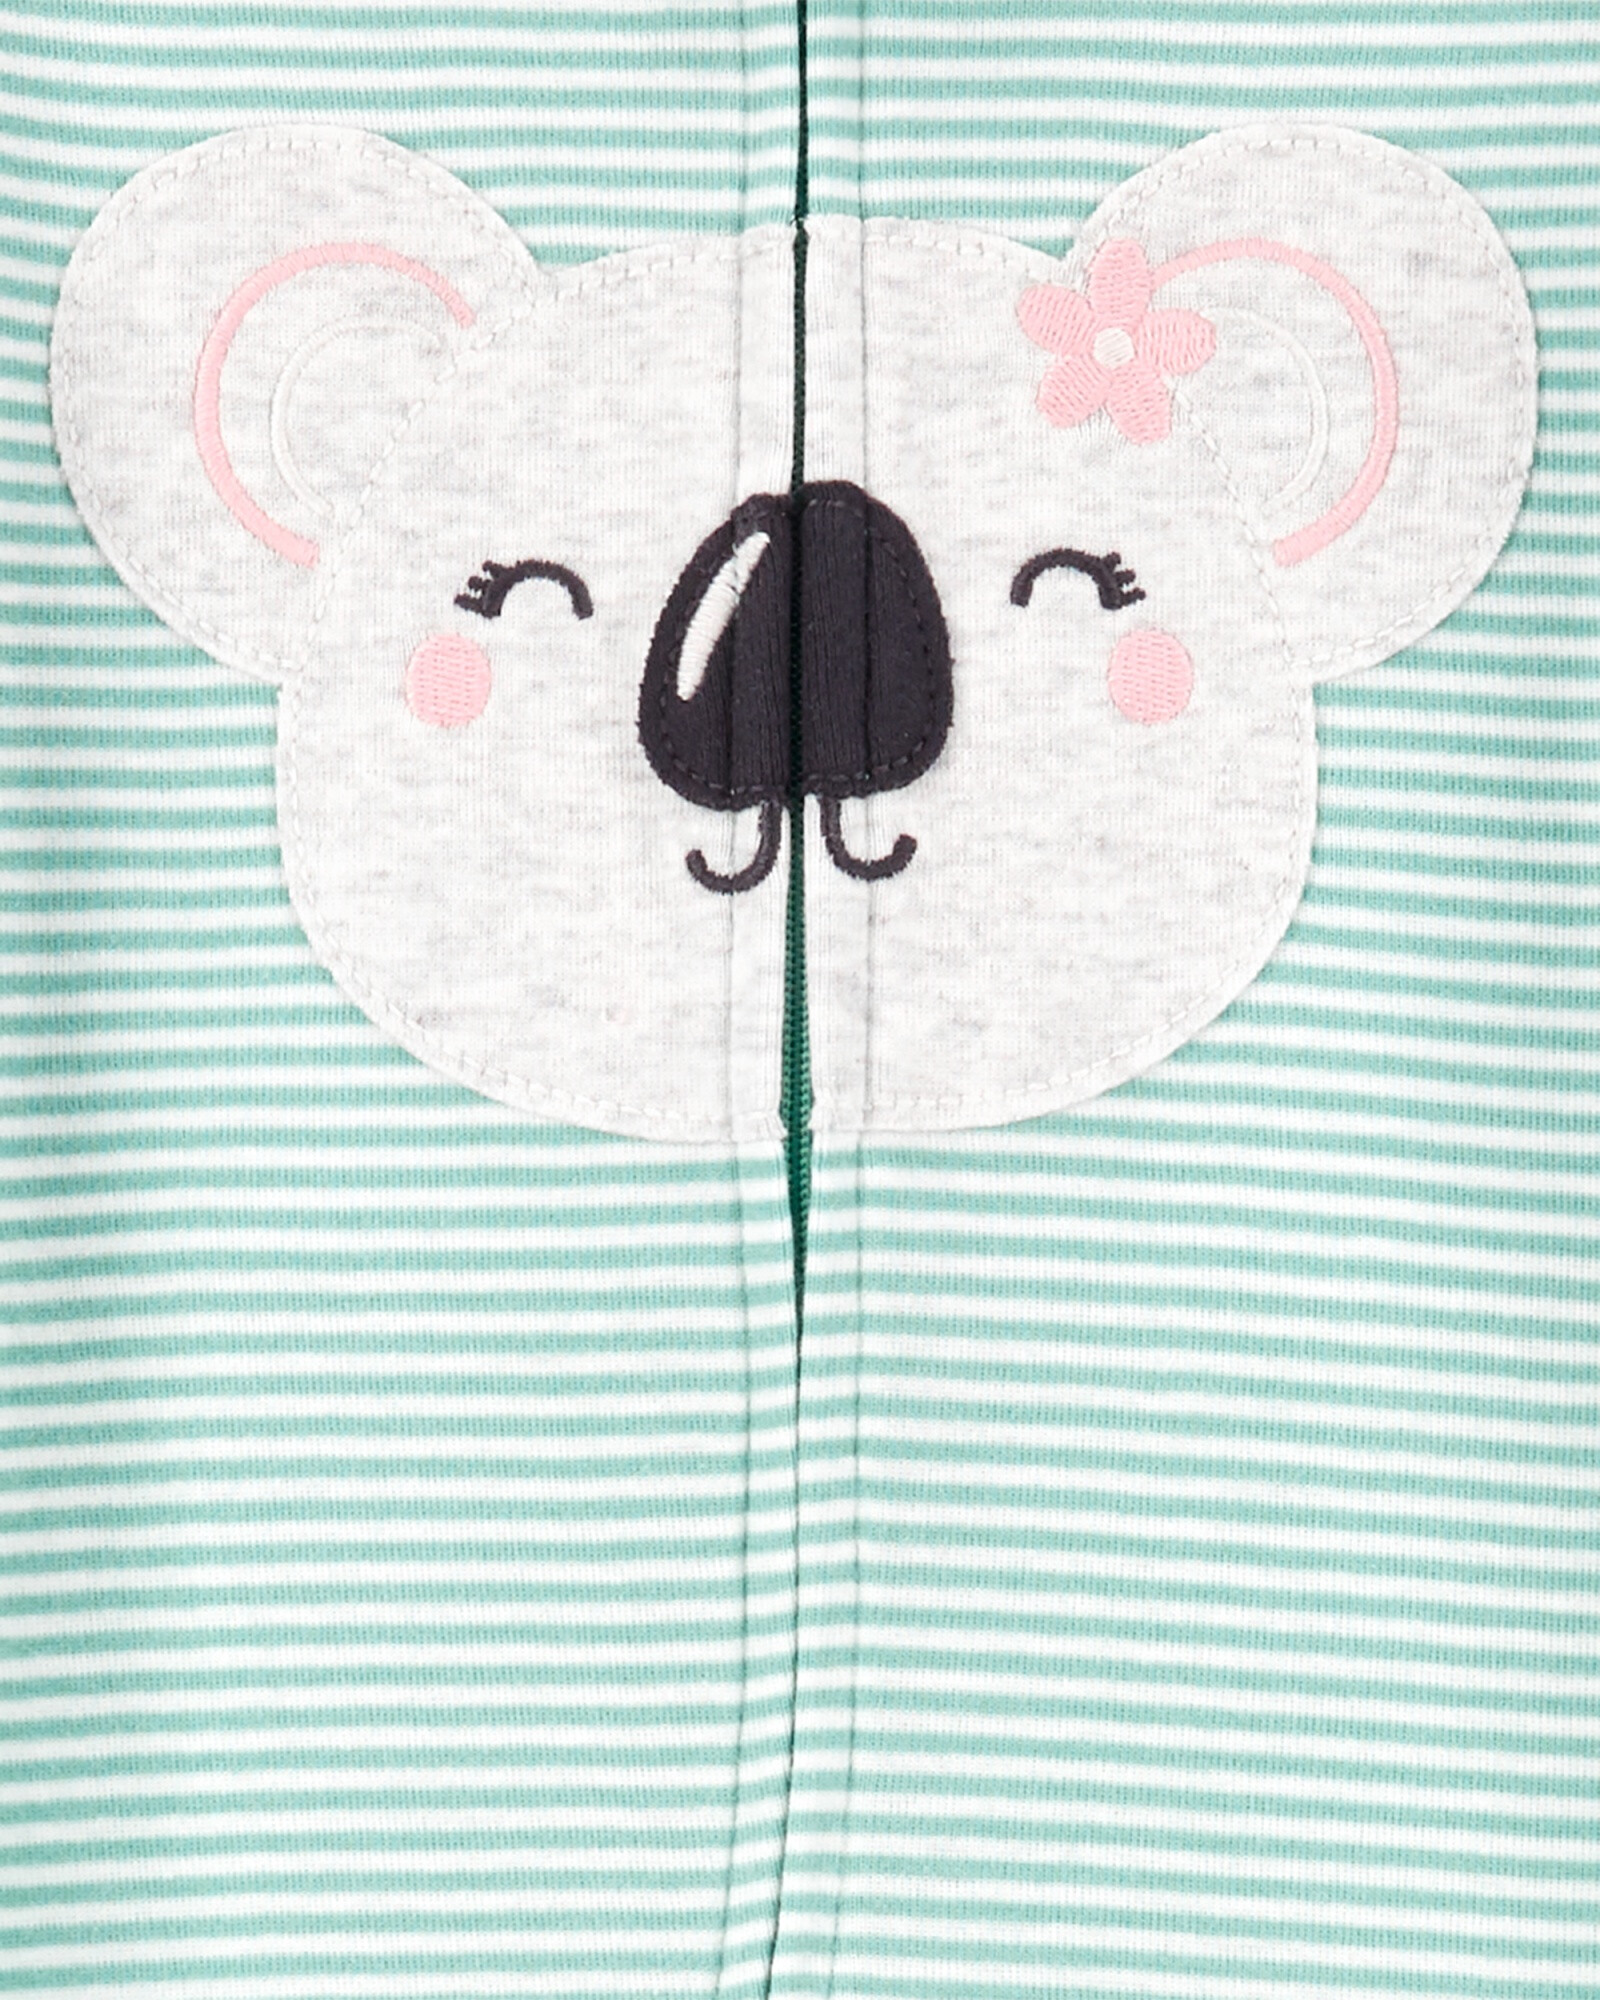 Pijama una pieza de algodón con pie estampa koala Sin color